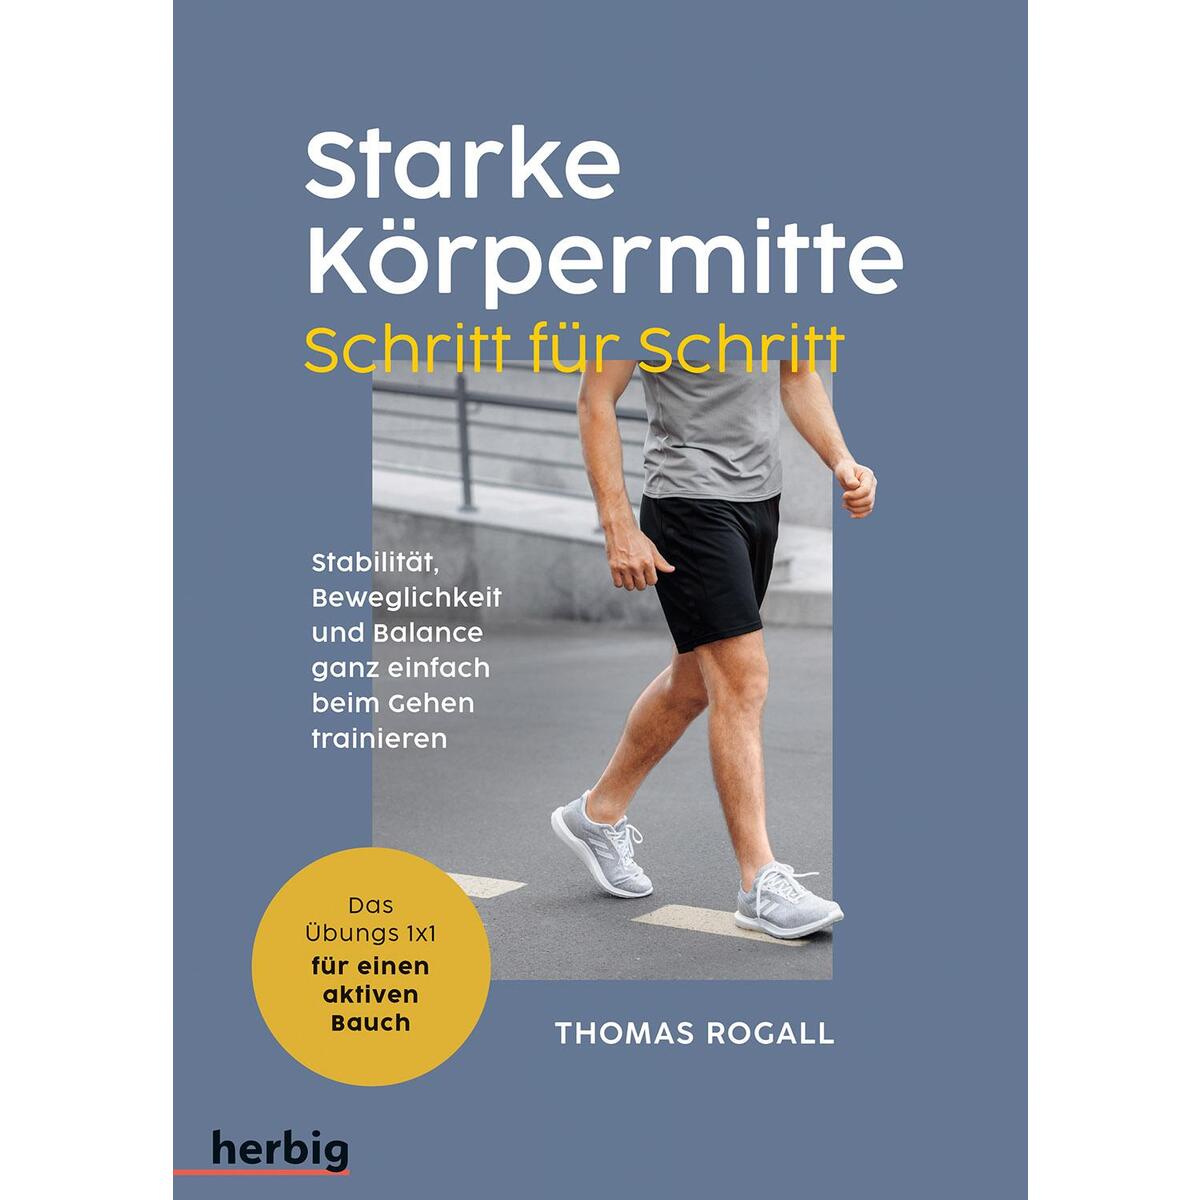 Starke Körpermitte Schritt für Schritt - Stabilität, Beweglichkeit und Balance g... von Herbig